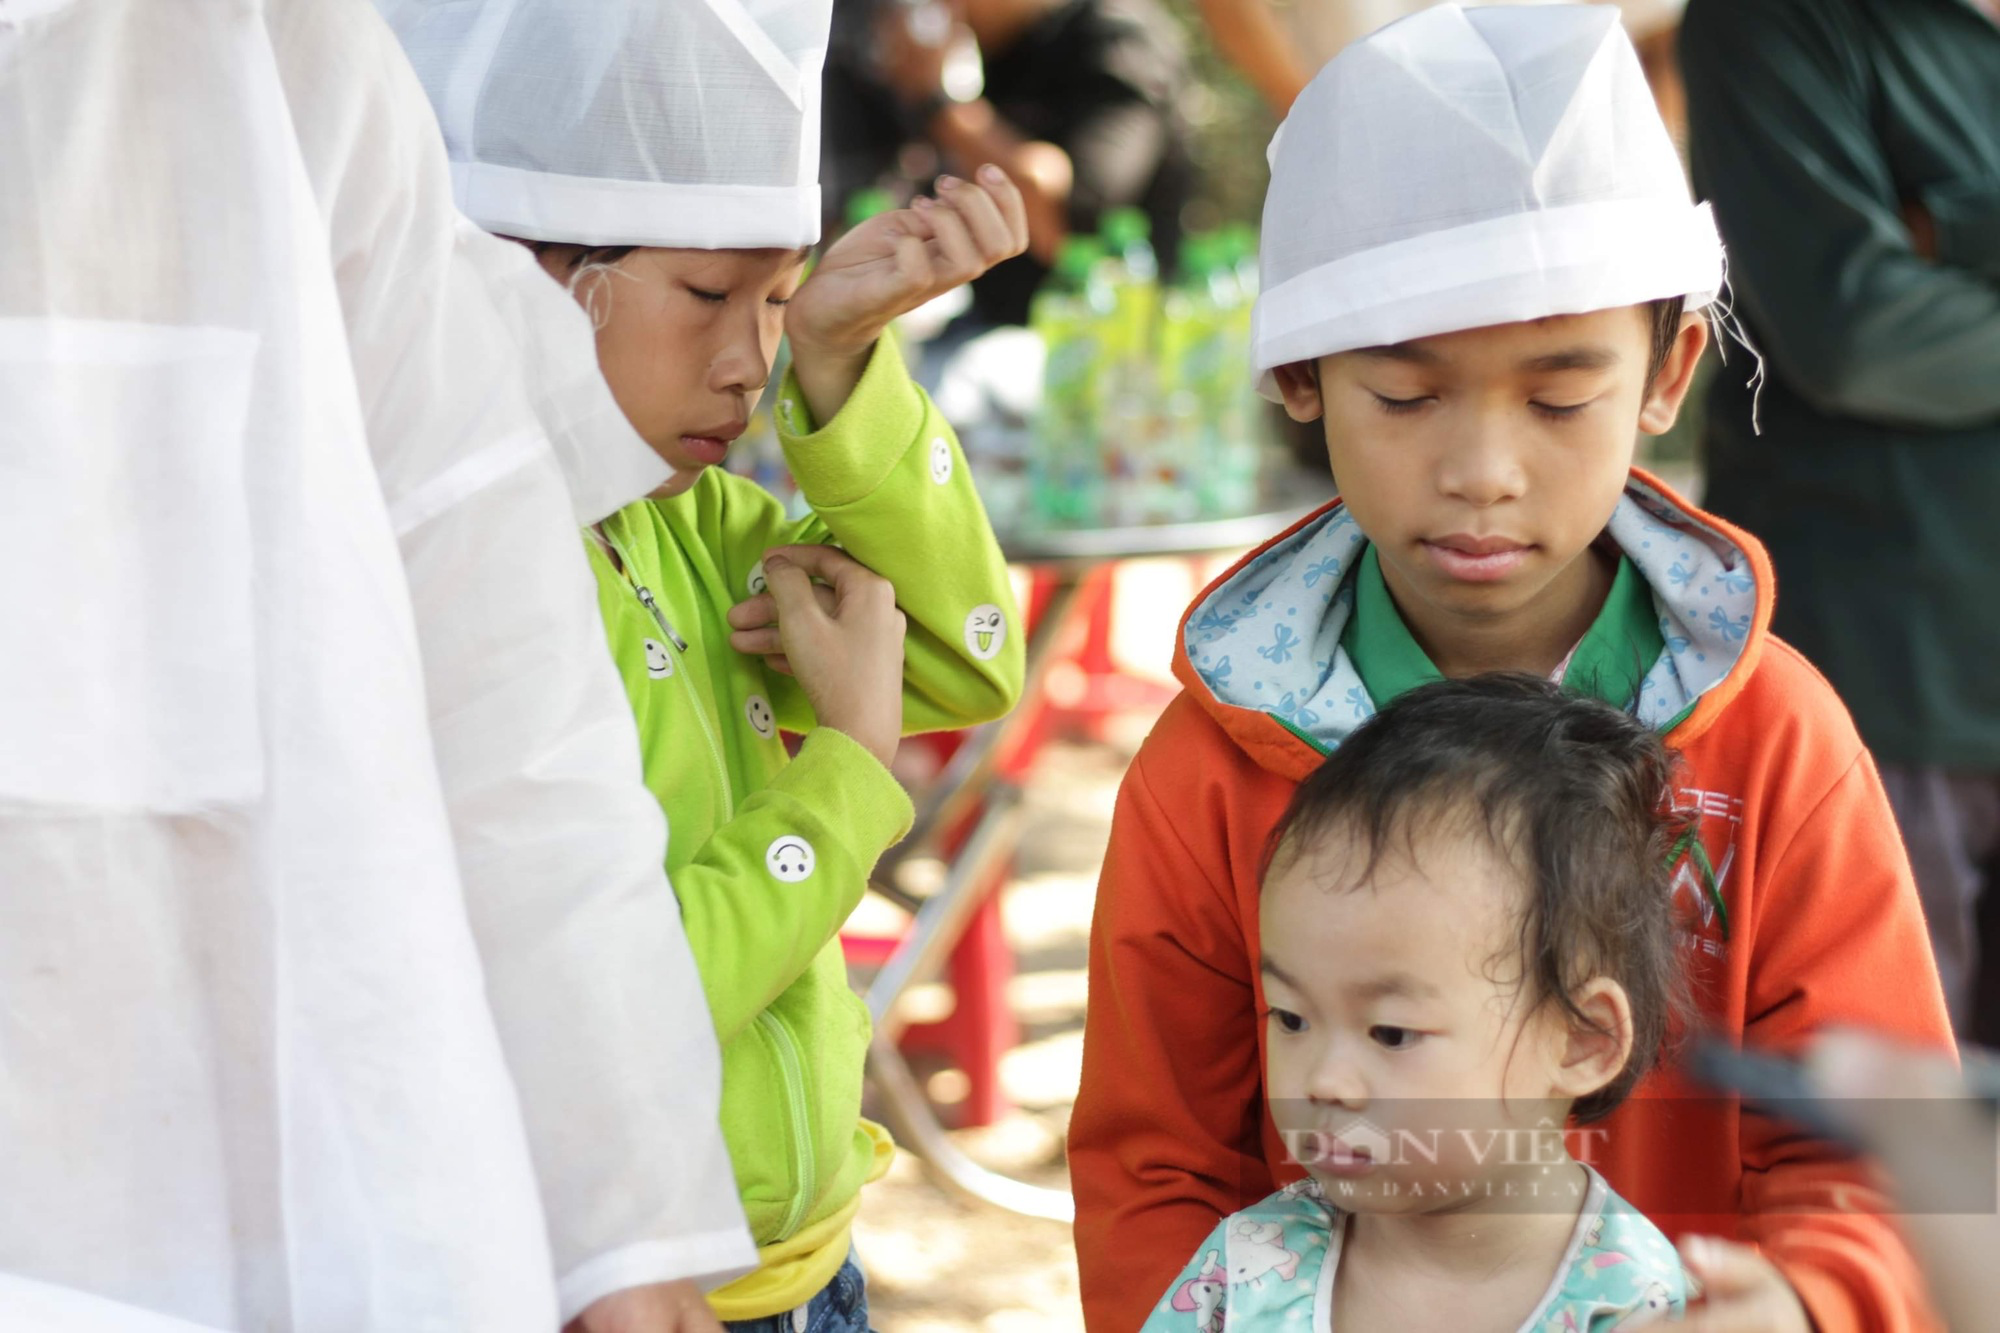 Chỉ vỏn vẹn 1 ngày, 1 thôn ở Bình Định tổ chức liên tiếp 3 đám tang đẫm nước mắt - Ảnh 3.